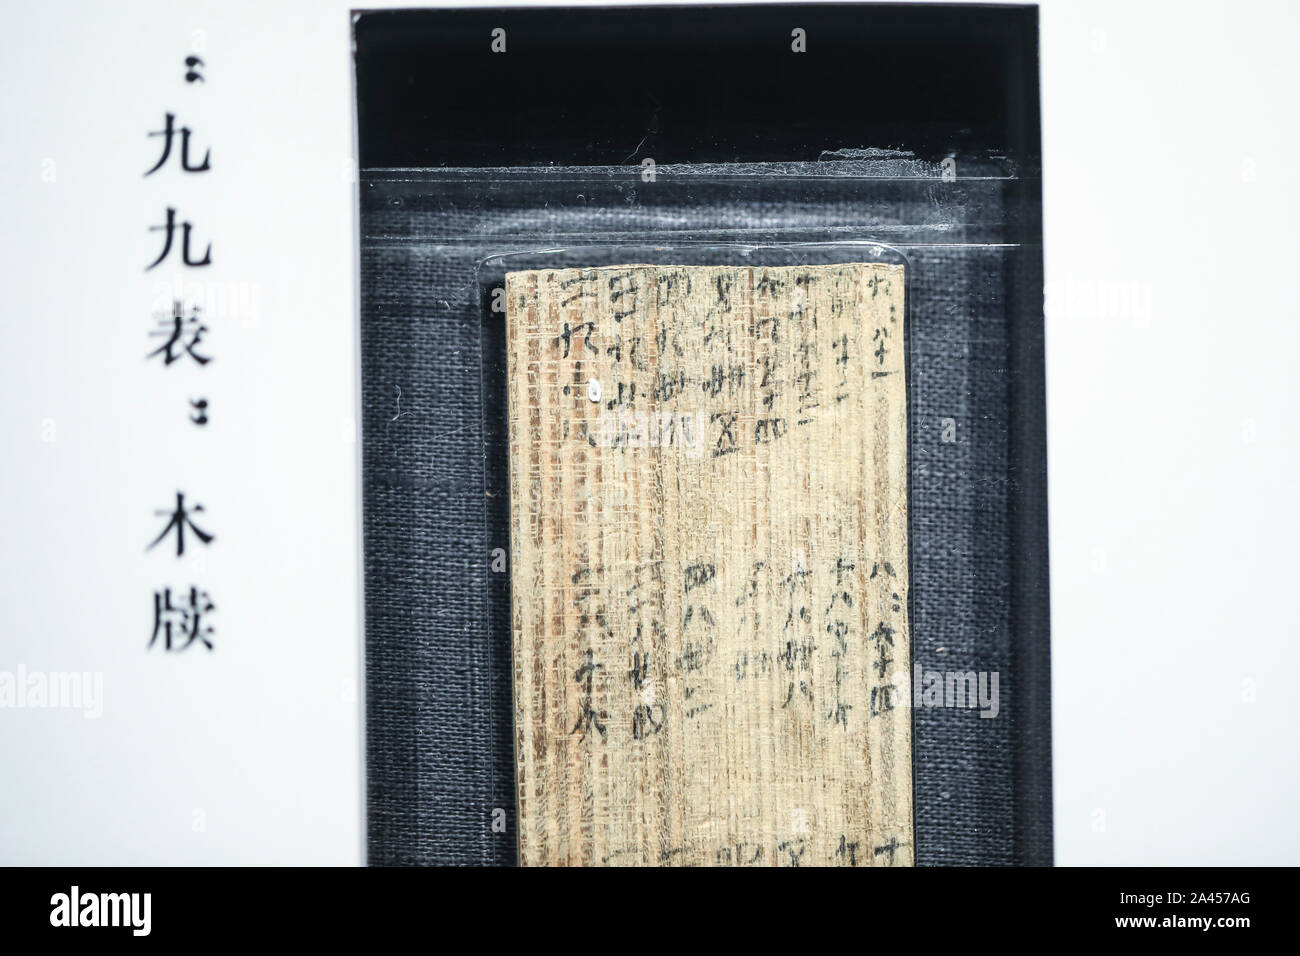 Bambus und Holz rutscht zurück zu Qin-dynastie (221 v. Chr.-207 v. Chr.) von der zentralen China Hunan Provinz werden während einer Ausstellung in der N angezeigt Stockfoto